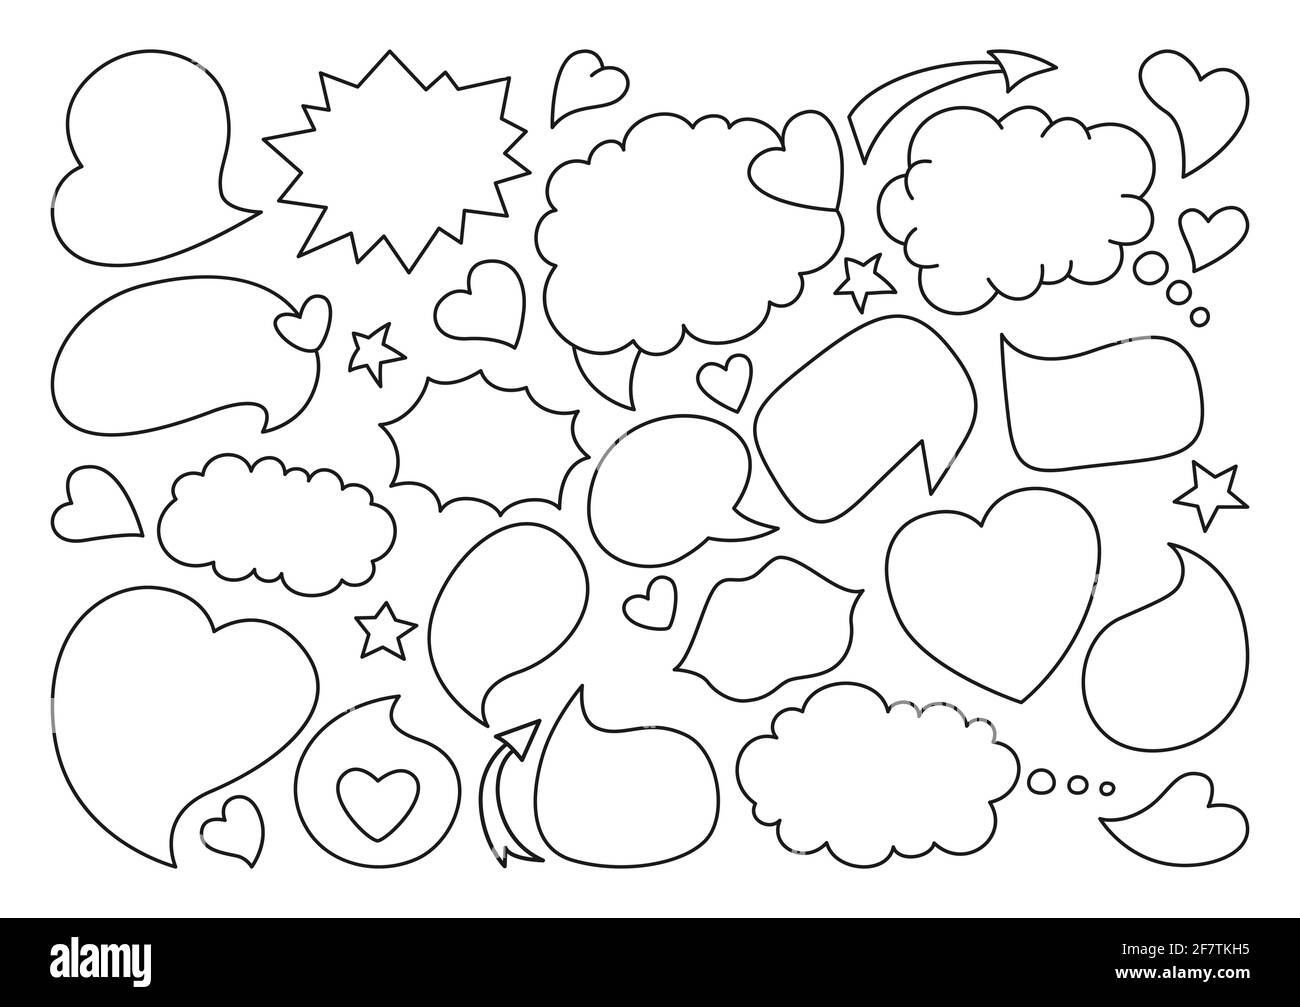 Speech bubble sketch black line doodle set. Elementi di disegno pop art dialoga nuvole per testo, banner d'amore. Libro fumetti dell'icona di blobs di pensiero di discorso. Illustrazione vettoriale cartoon disegnata a mano Illustrazione Vettoriale